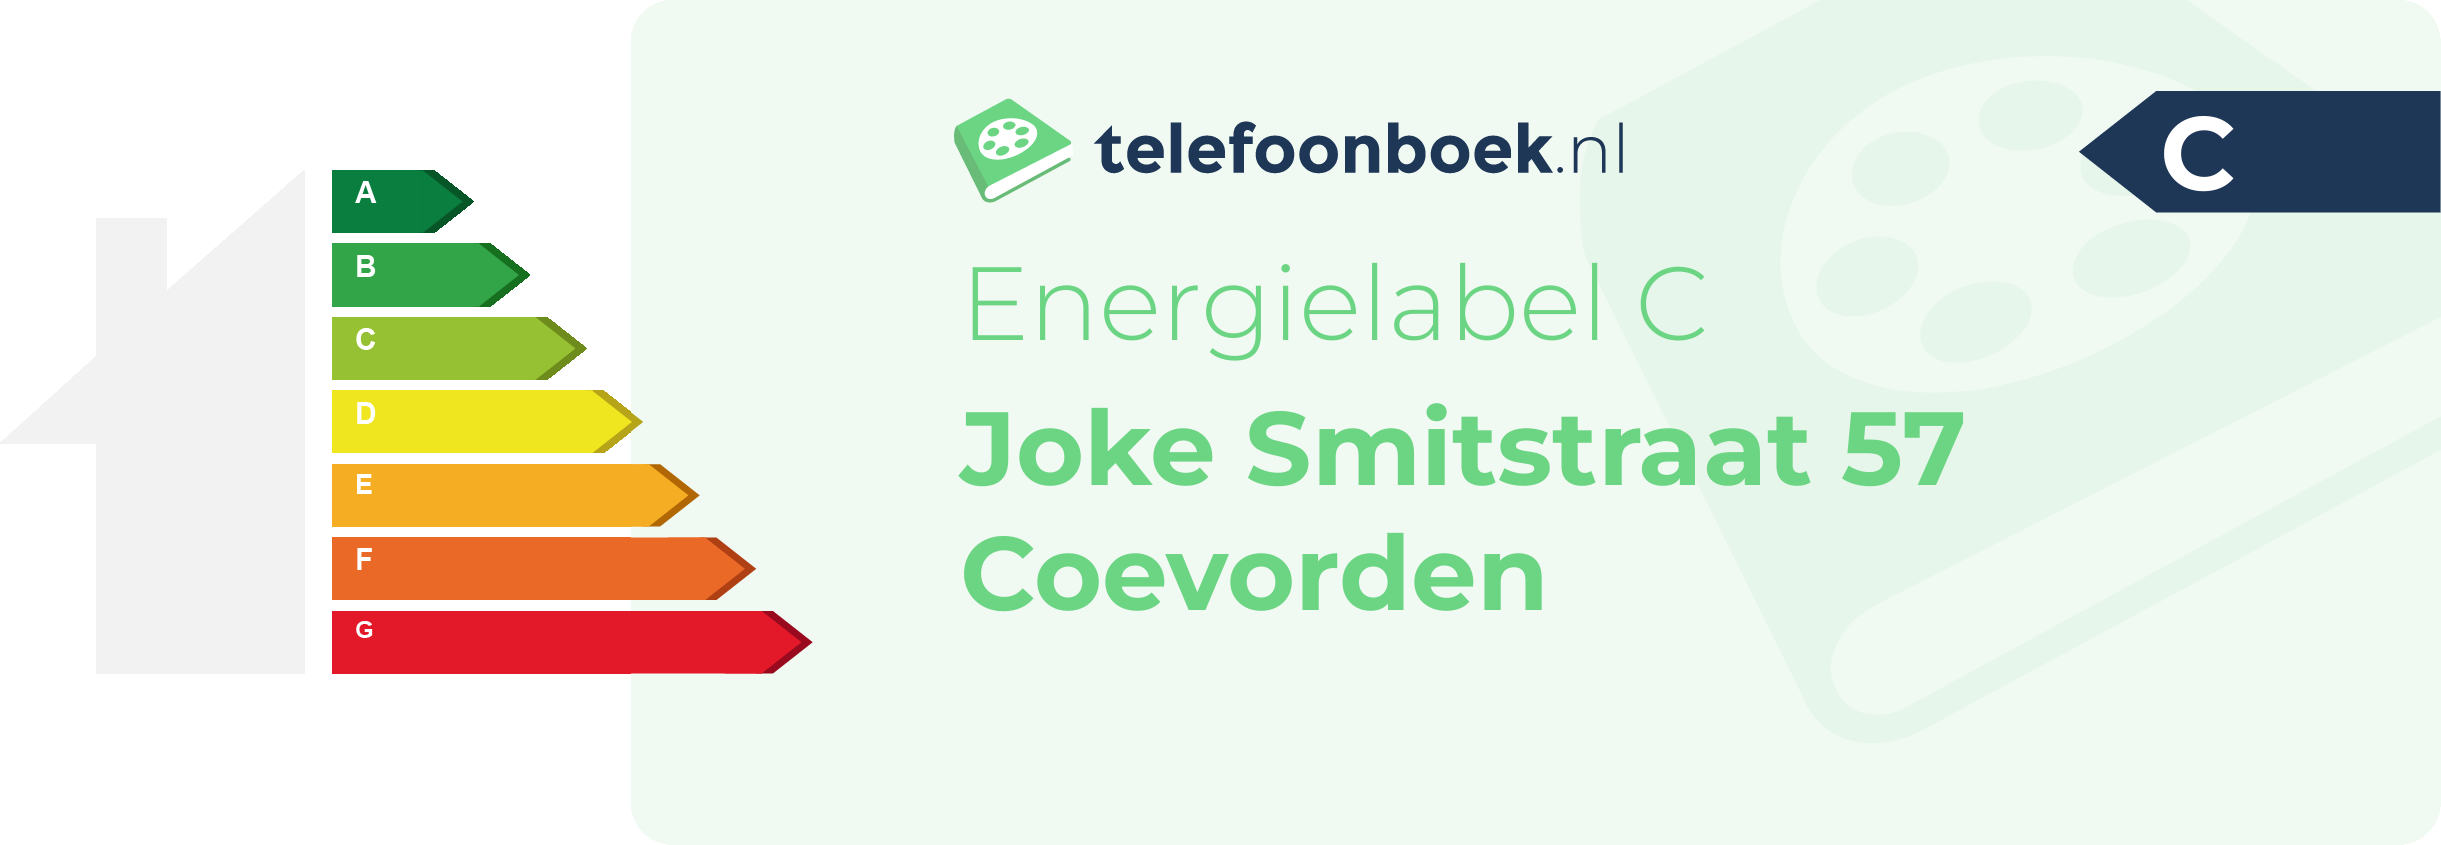 Energielabel Joke Smitstraat 57 Coevorden